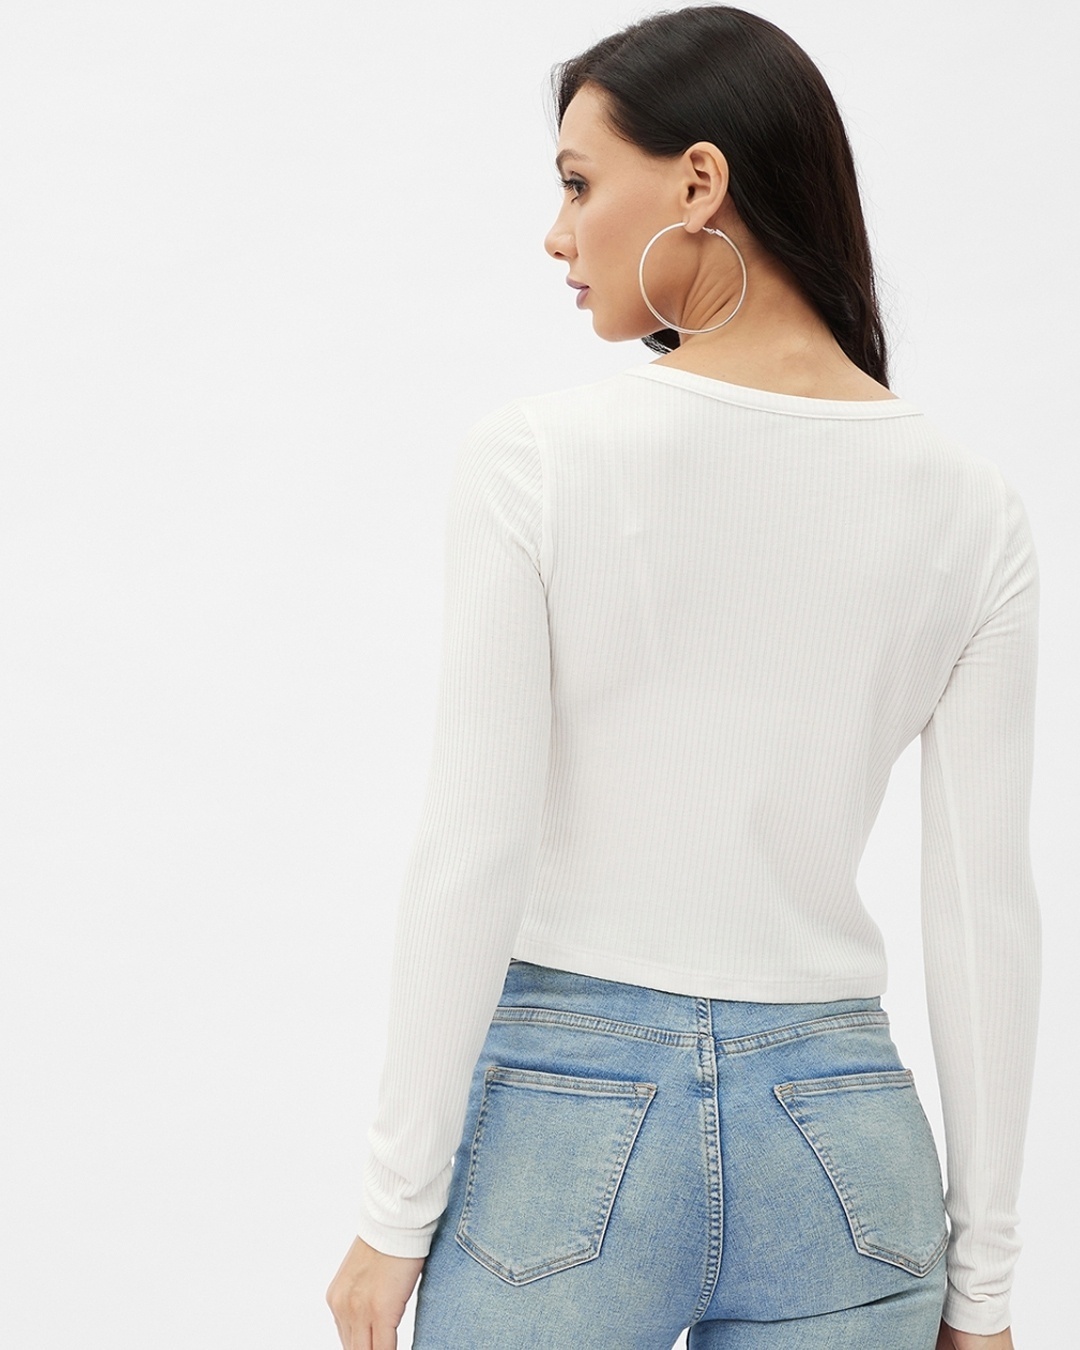 Buy Women's White Rayon V-neck Long Sleeve Top for Women White Online ...